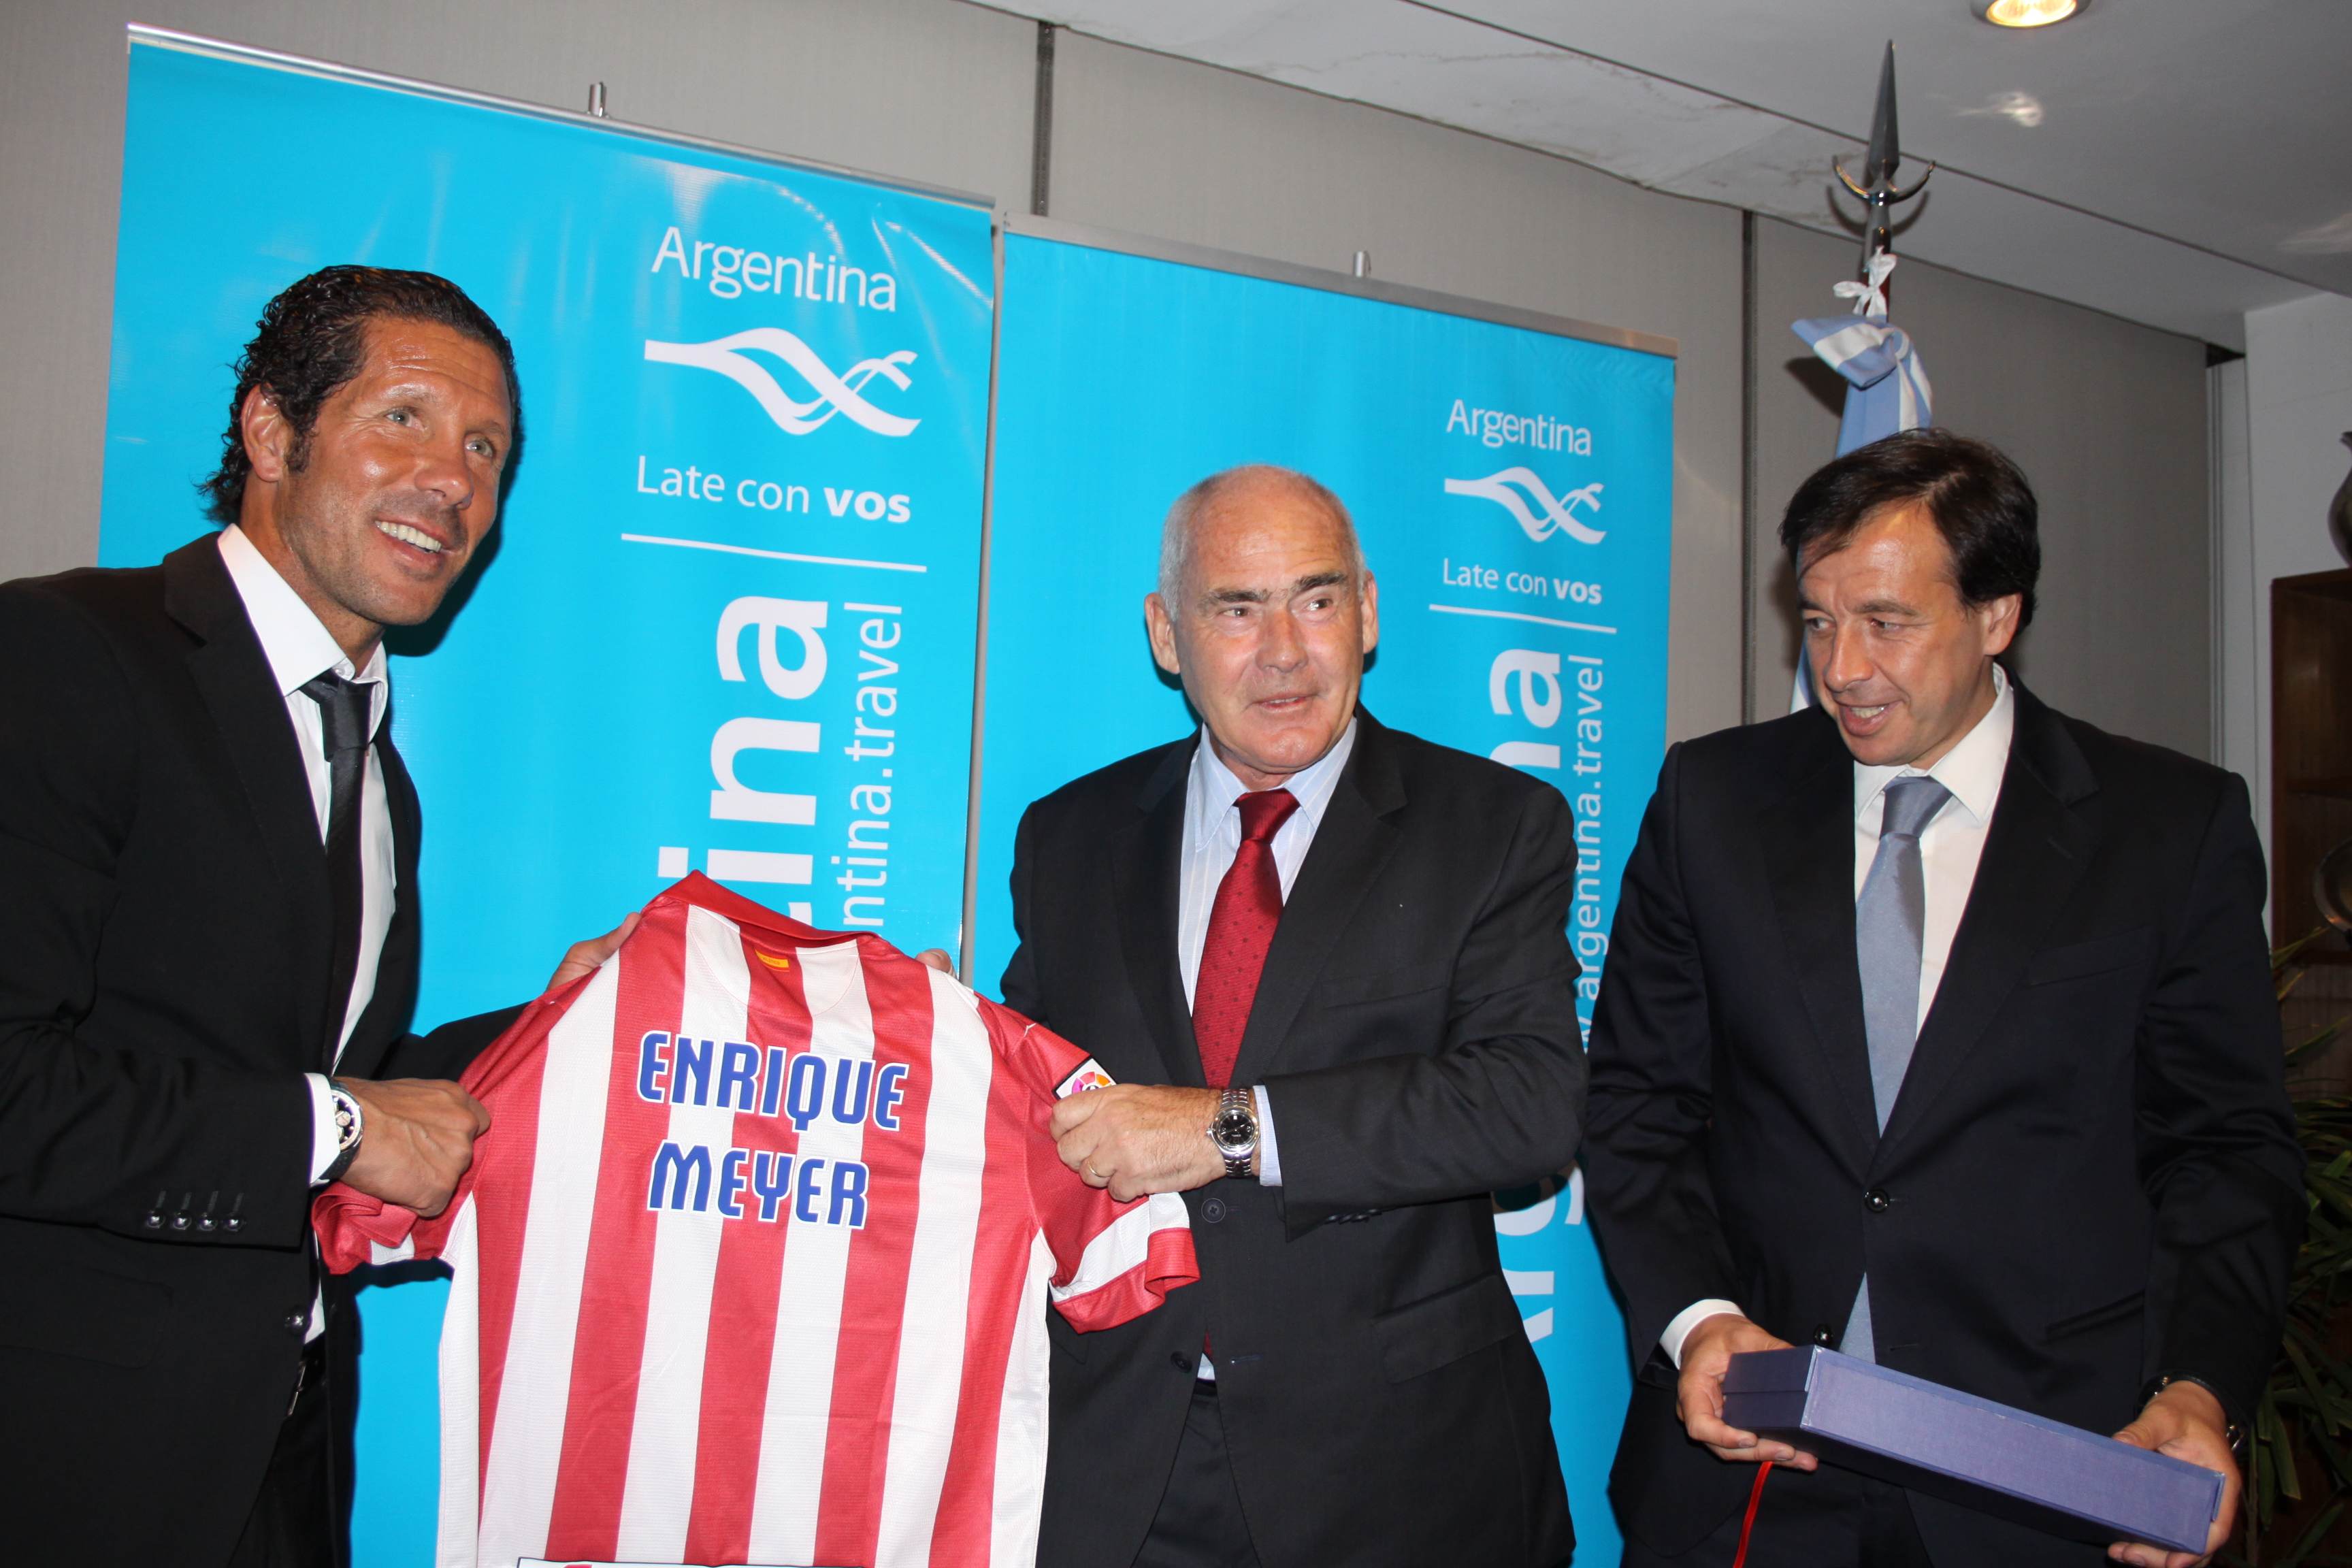 El director Técnico del Atlético Madrid, Diego Simeone, entrega la camiseta del club al ministro de Turismo de la Nación, Enrique Meyer, junto al vicepresidente de la institución española, Antonio Alonso.